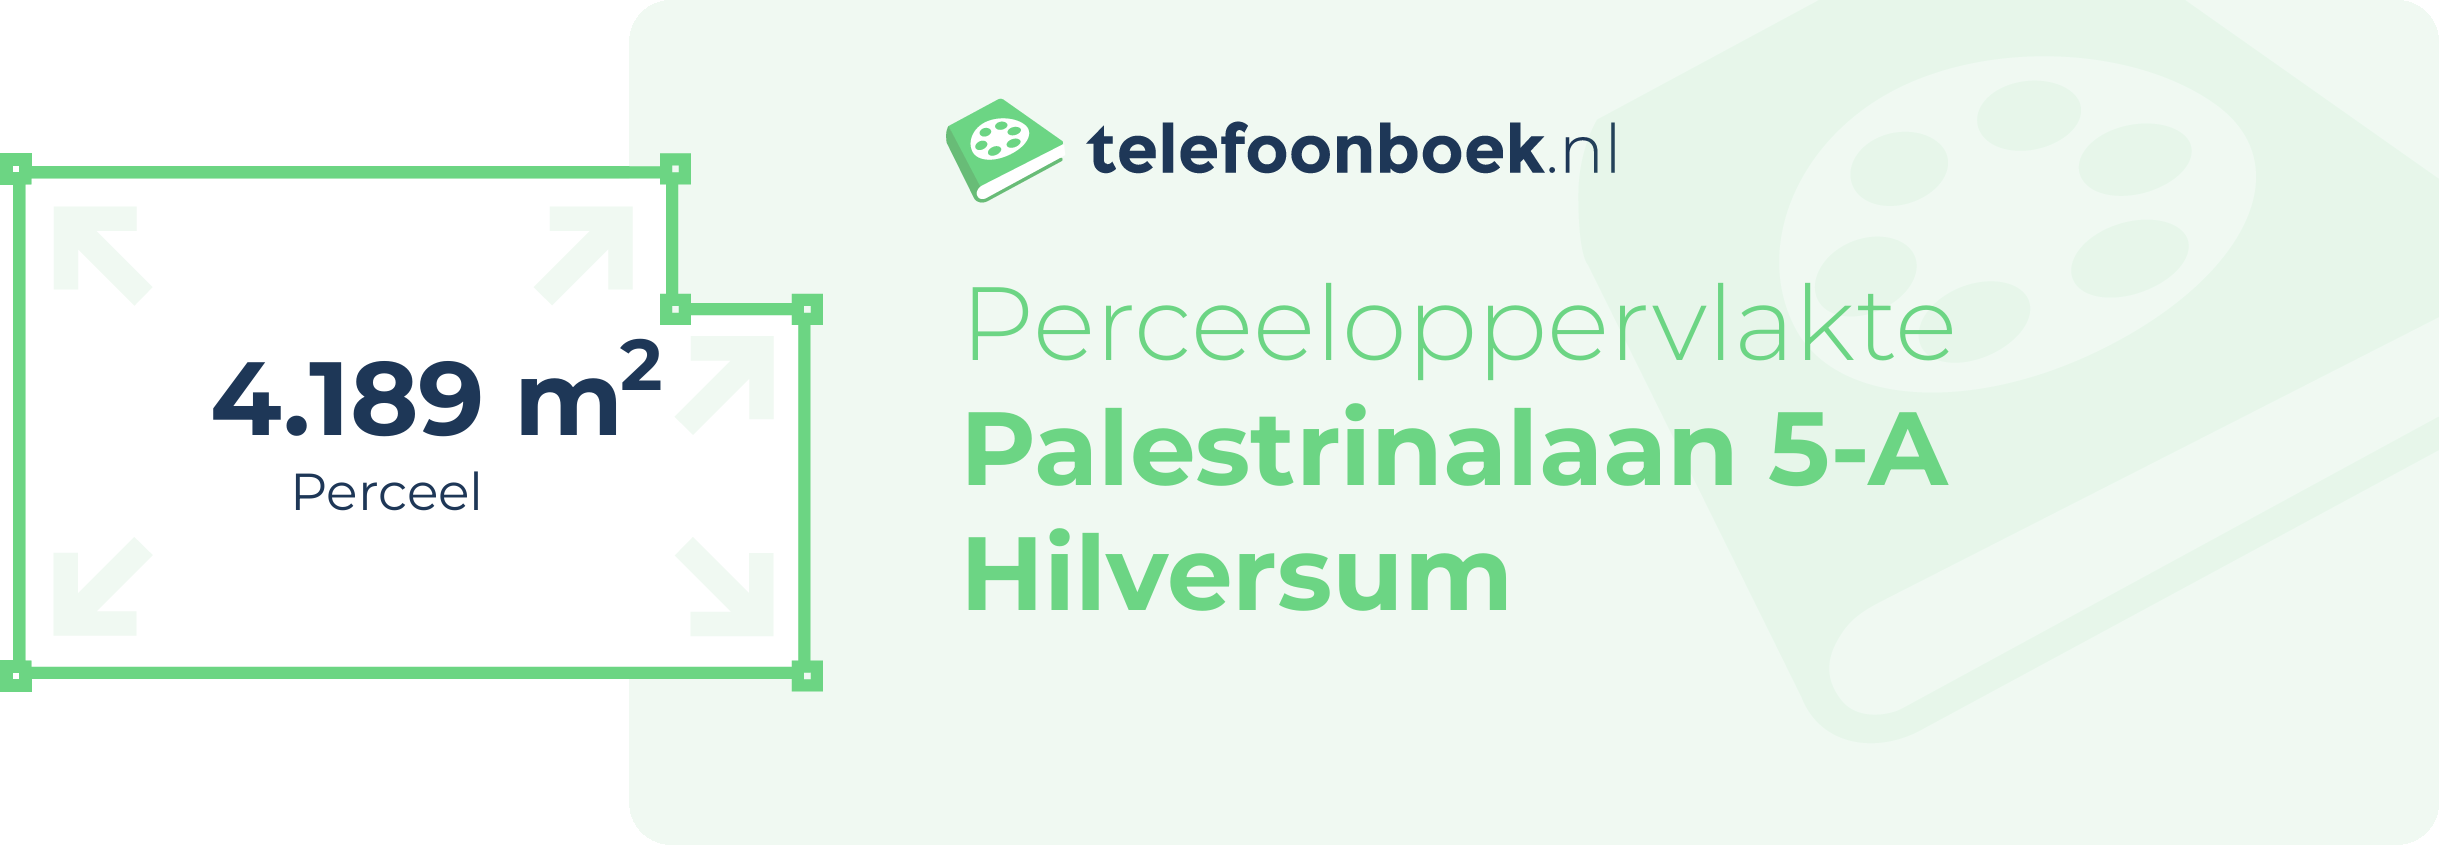 Perceeloppervlakte Palestrinalaan 5-A Hilversum